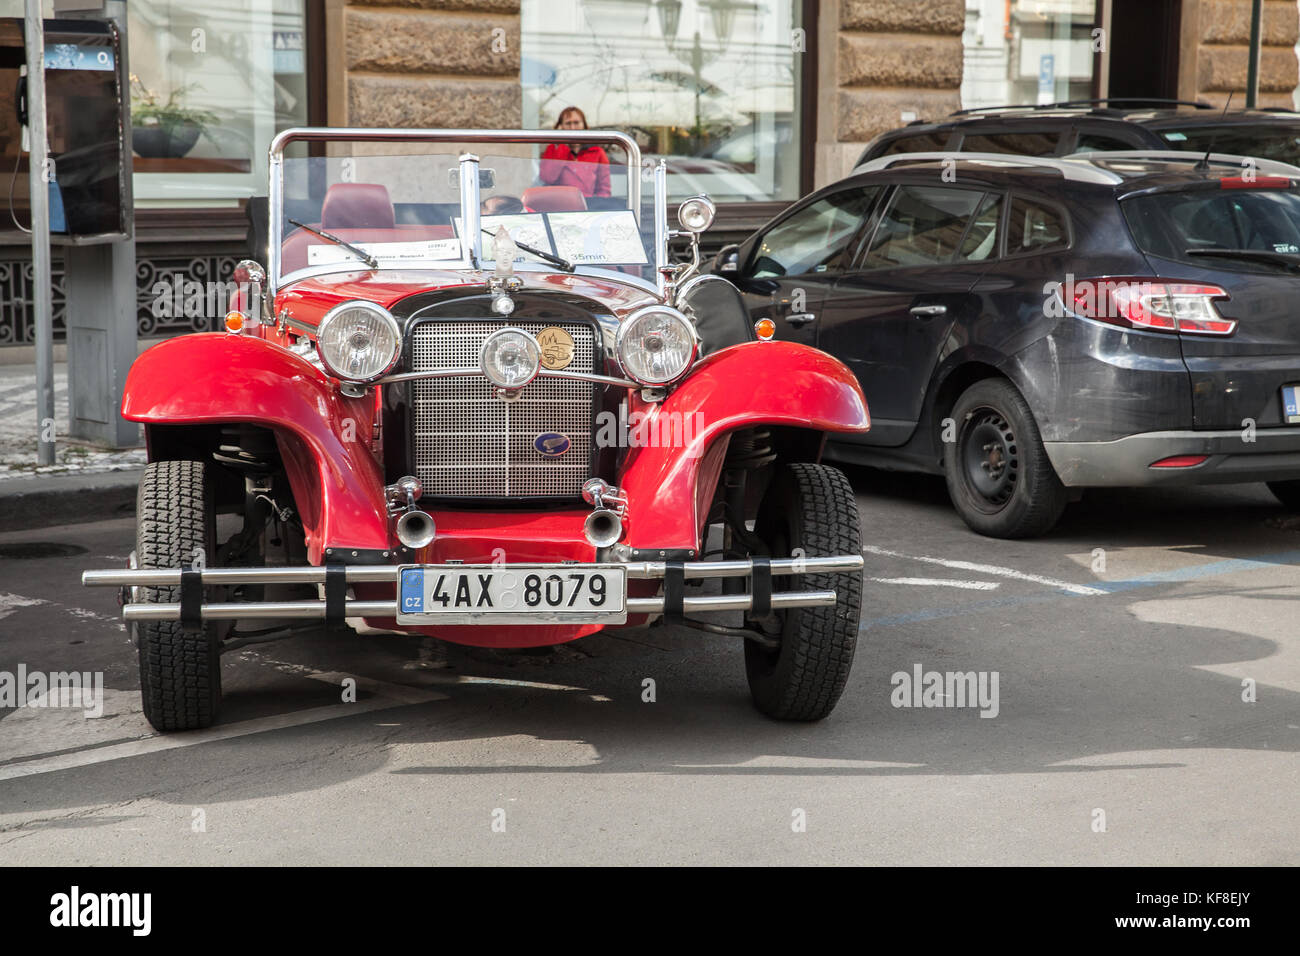 Praga, Repubblica Ceca - 2 maggio 2017: rosso vintage oldtimer cavalletti auto parcheggiate sulla strada della vecchia Praga Foto Stock